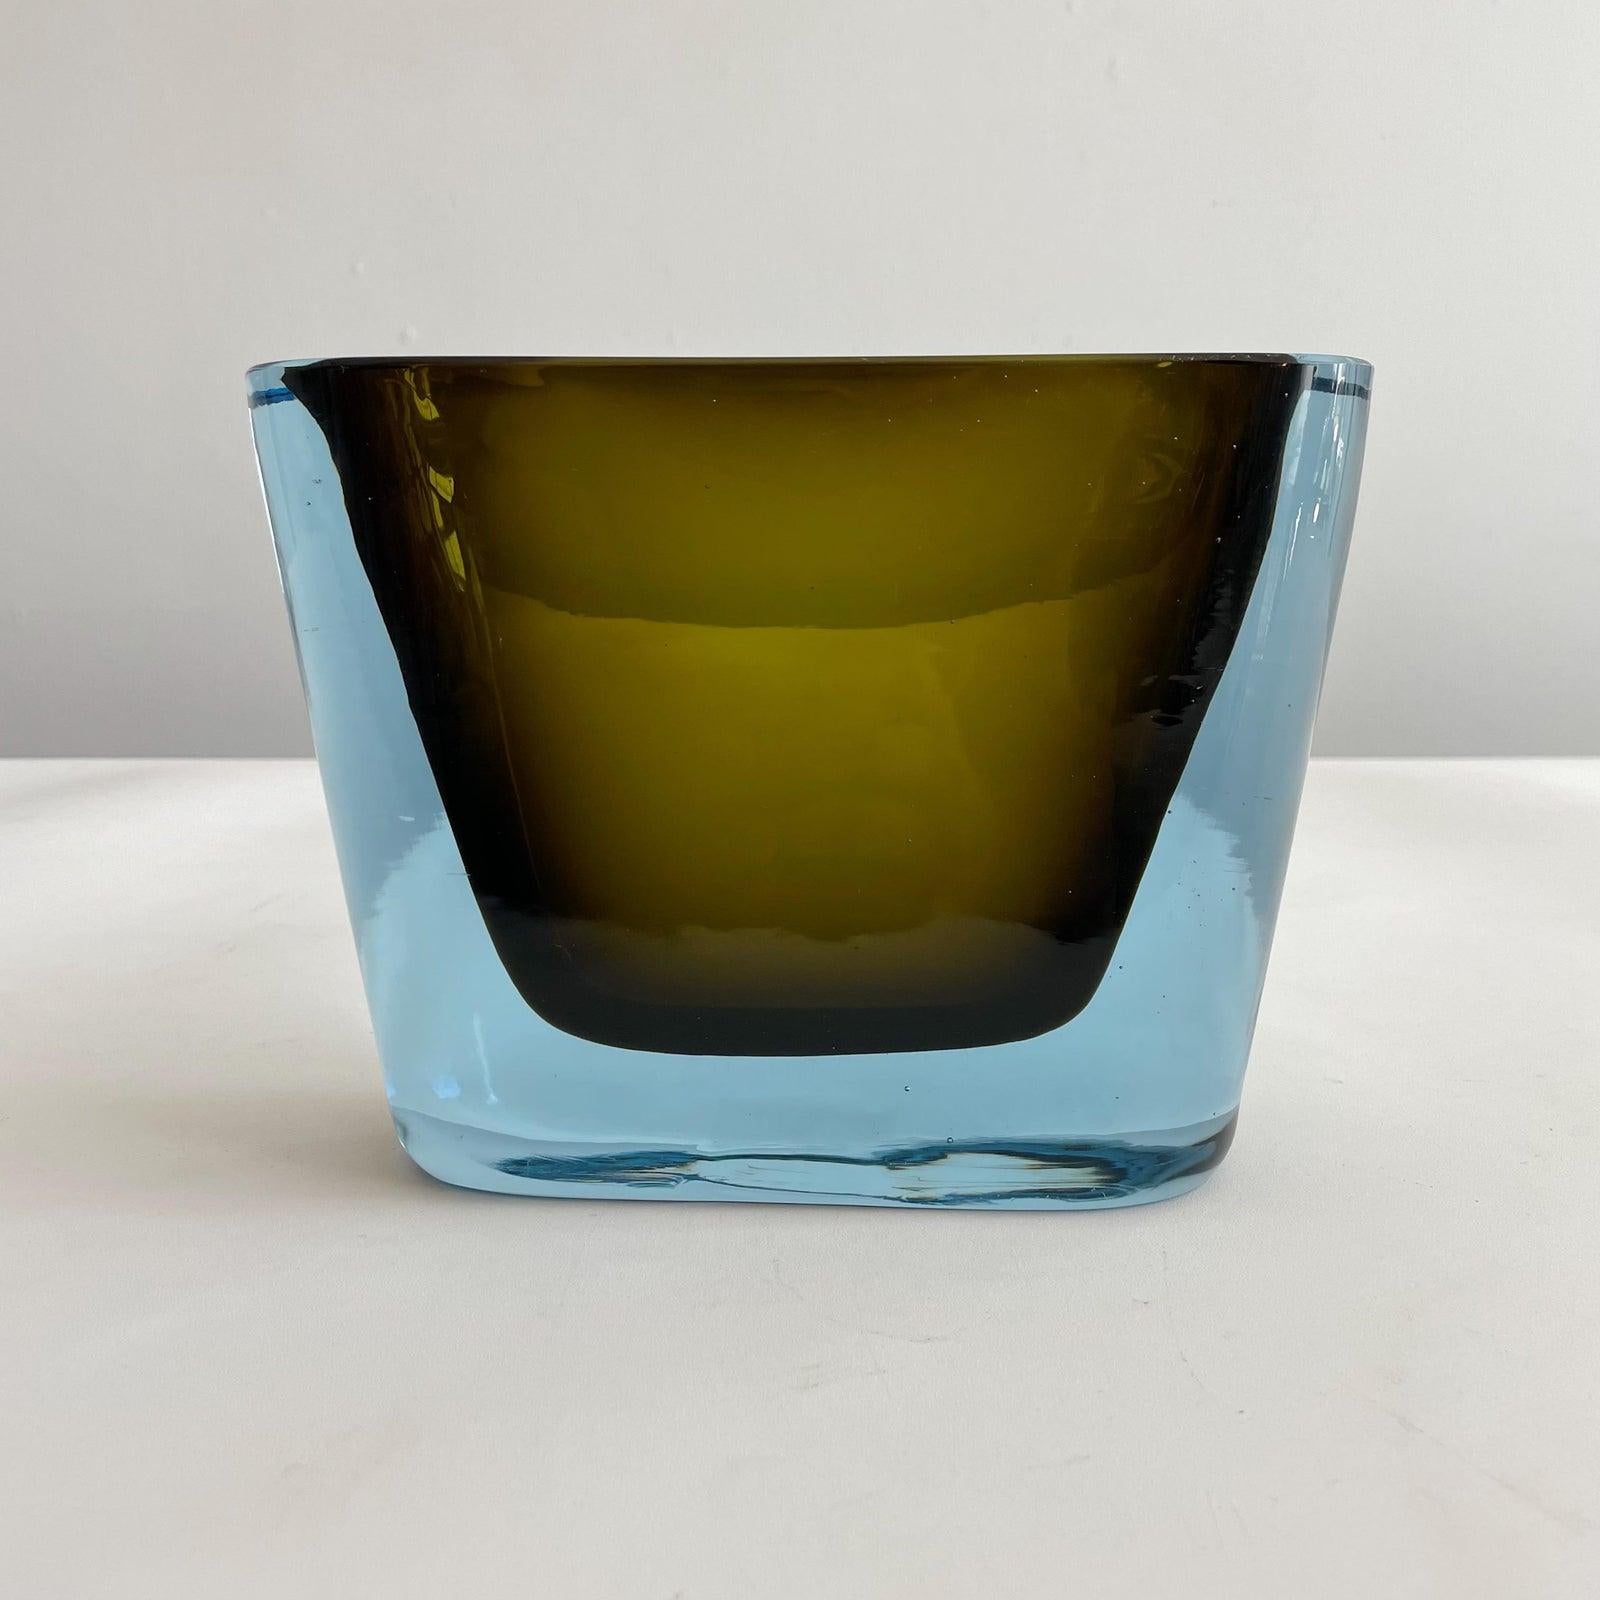 Murano summers glass vase in vibrant blue and amber colors by Antonio Da Ros for Cenedese. Unsigned.

Antonio Da Ros (1936-2012) graduated in 1957 from the Istituto Superiore di Arti Decorative 'Carmini' in Venice, getting the title of Professor